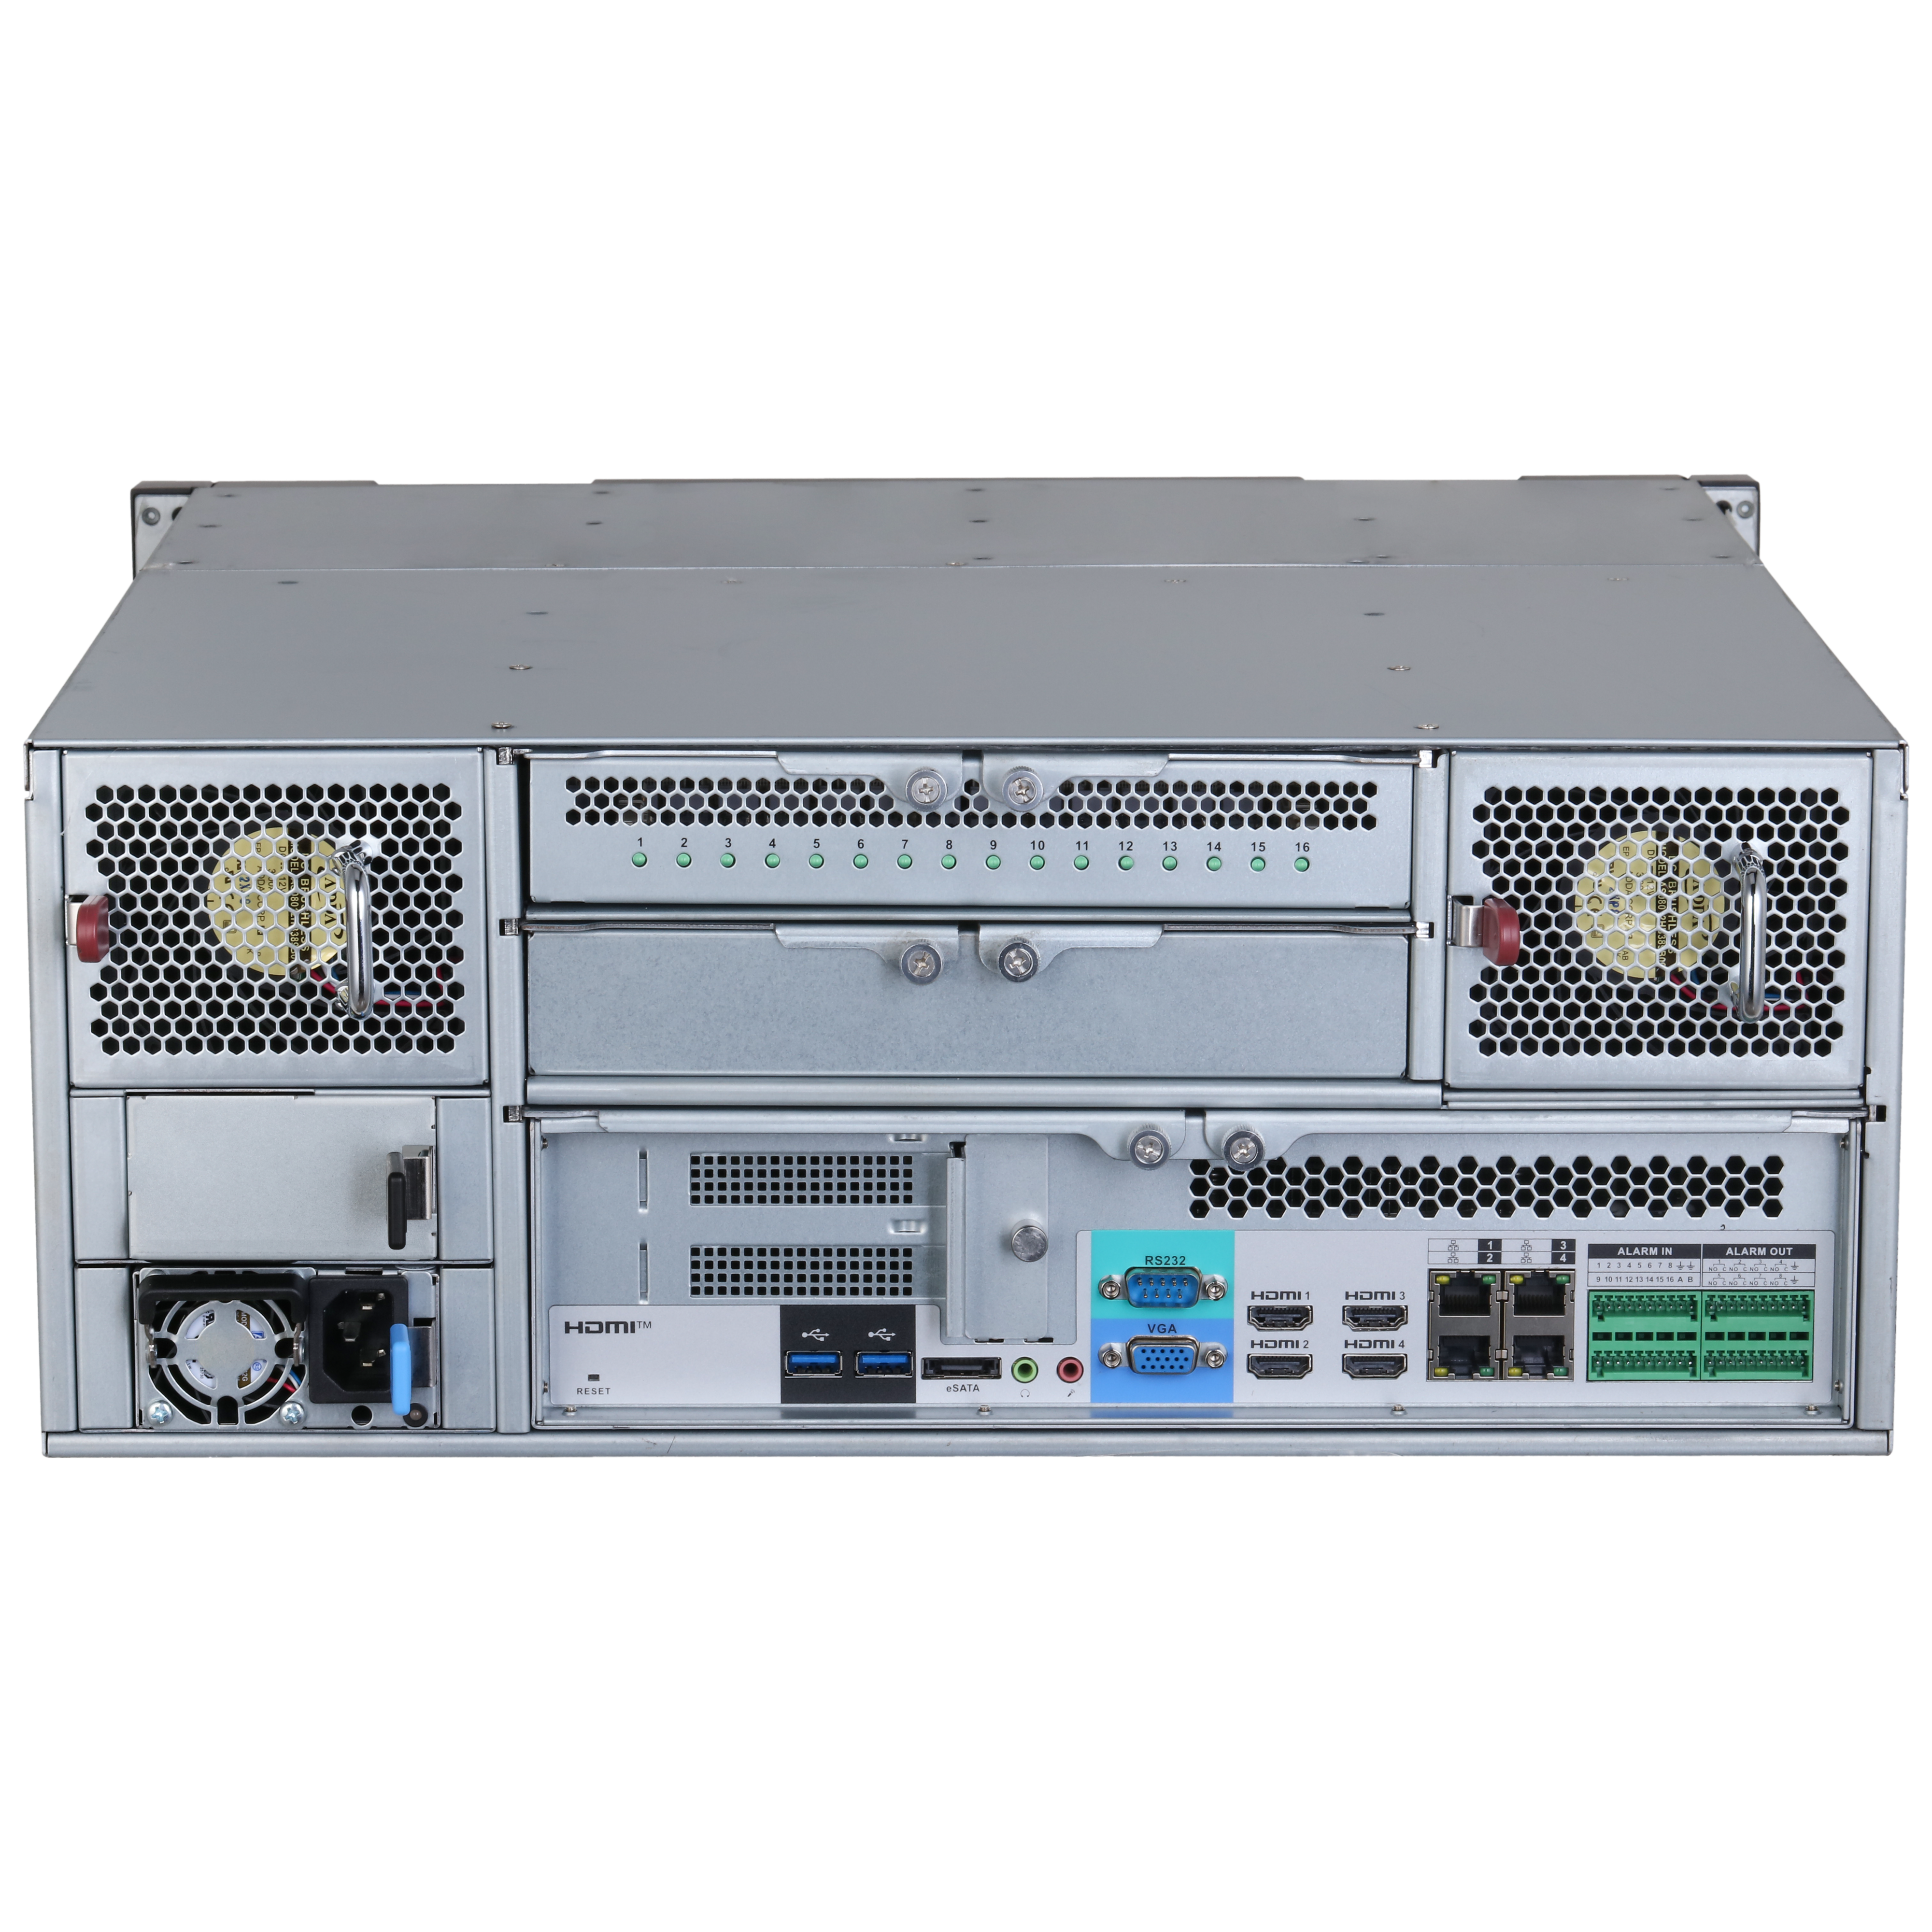 DAHUA IVSS7124-16I 256CH 4U Intelligent Video Surveillance Server